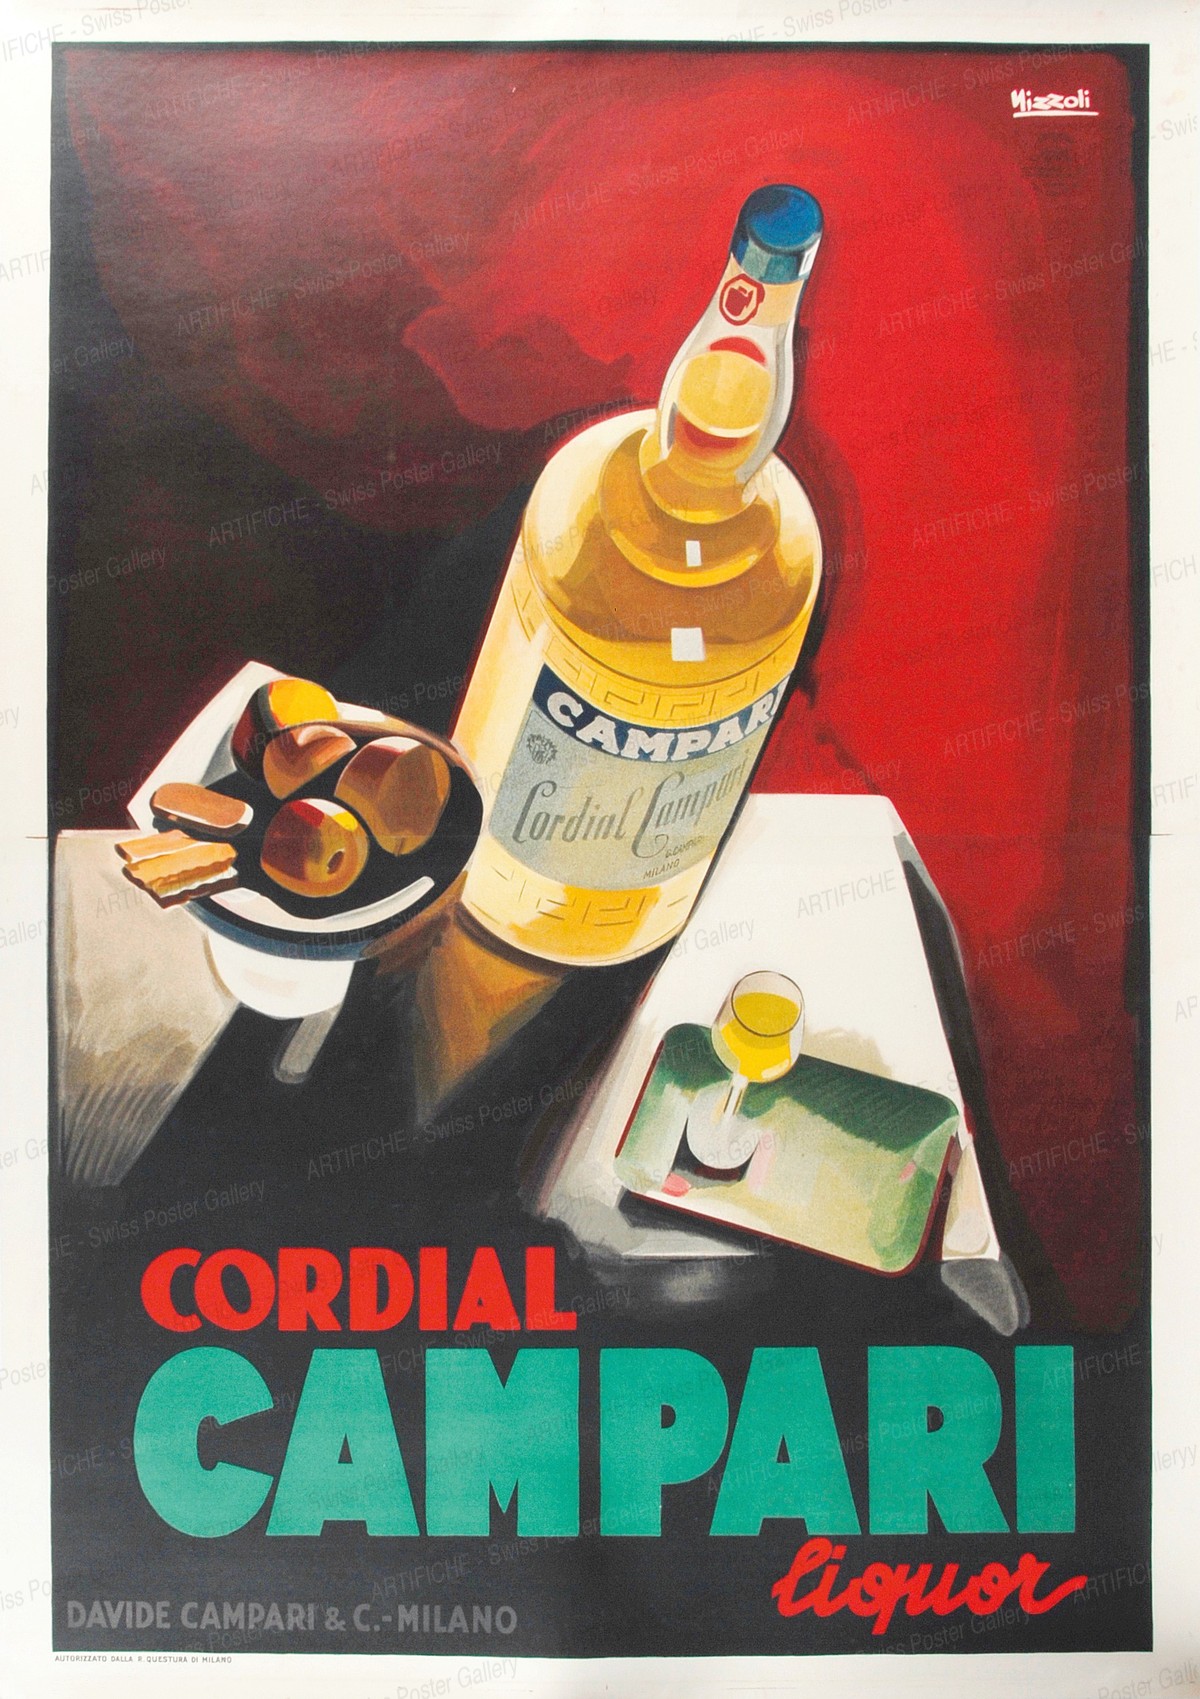 Cordial CAMPARI Liquor, Marcello Nizzoli